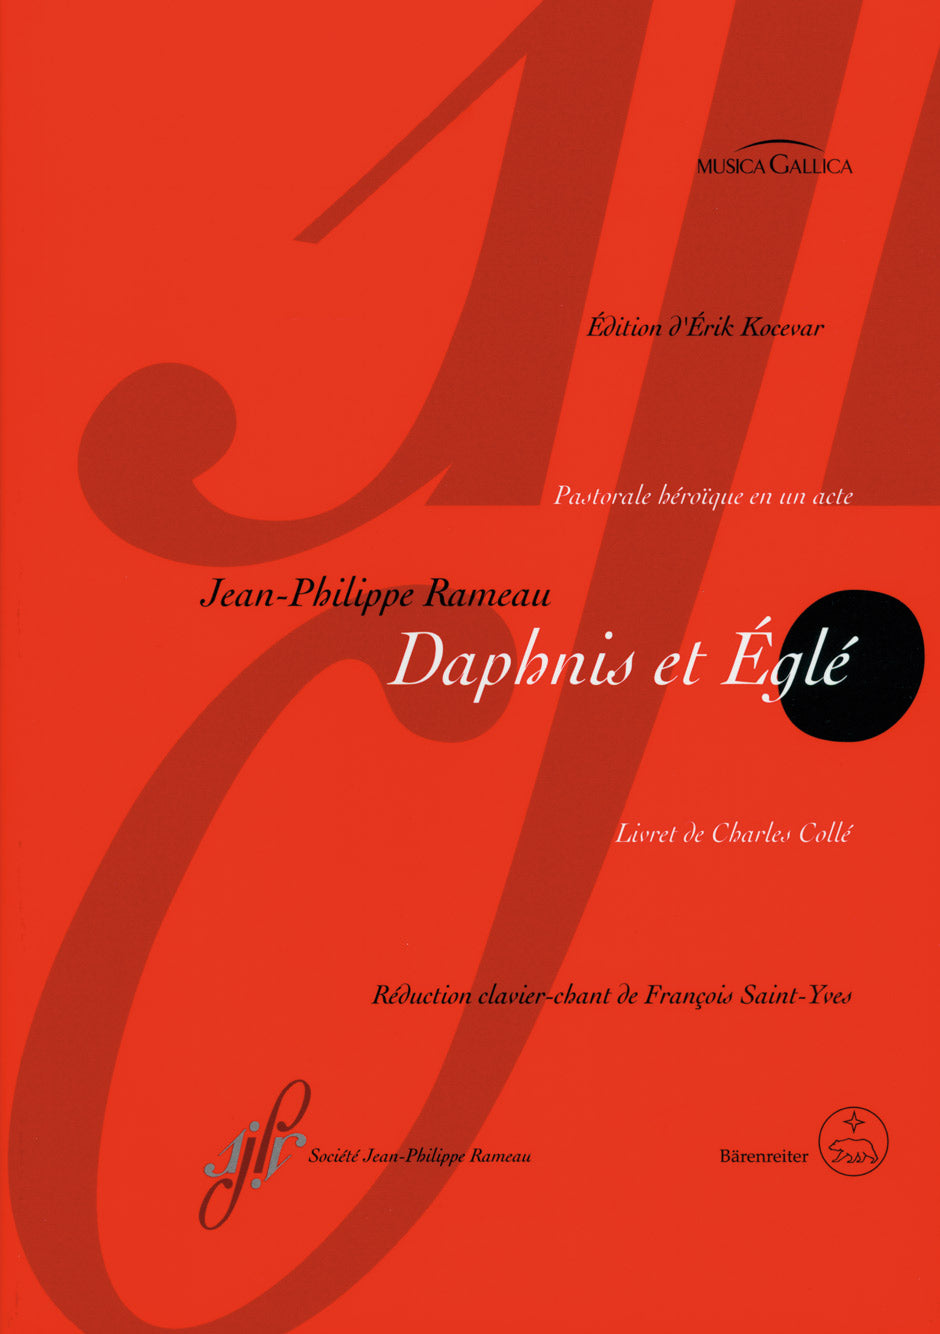 Rameau Daphnis et Egle -Pastorale héro´que in one act-